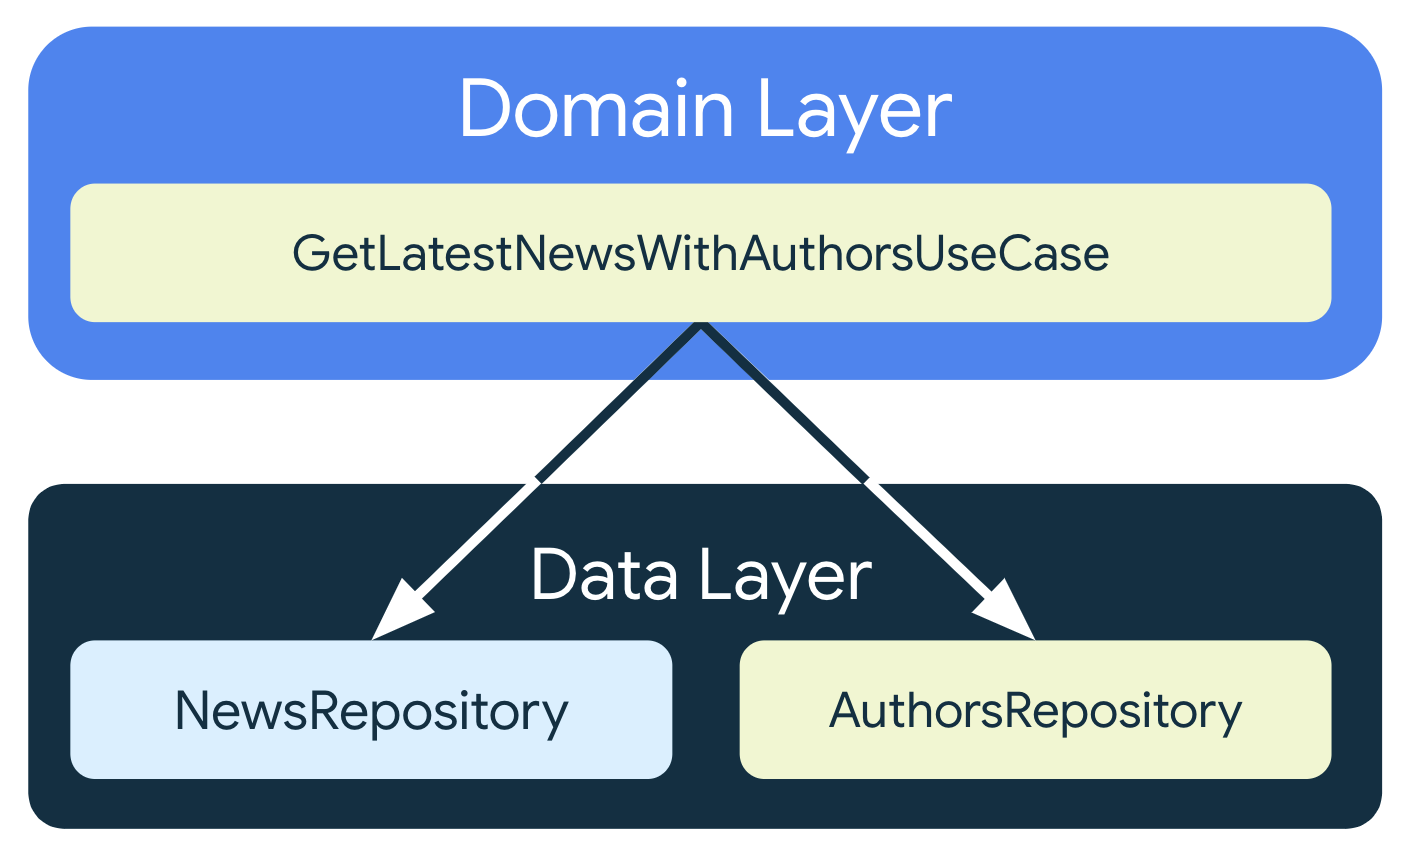 Metoda GetLastNewsWithAuthorsUseCase zależy od 2 różnych klas repozytorium z warstwy danych: NewsRepository i AuthorsRepository.